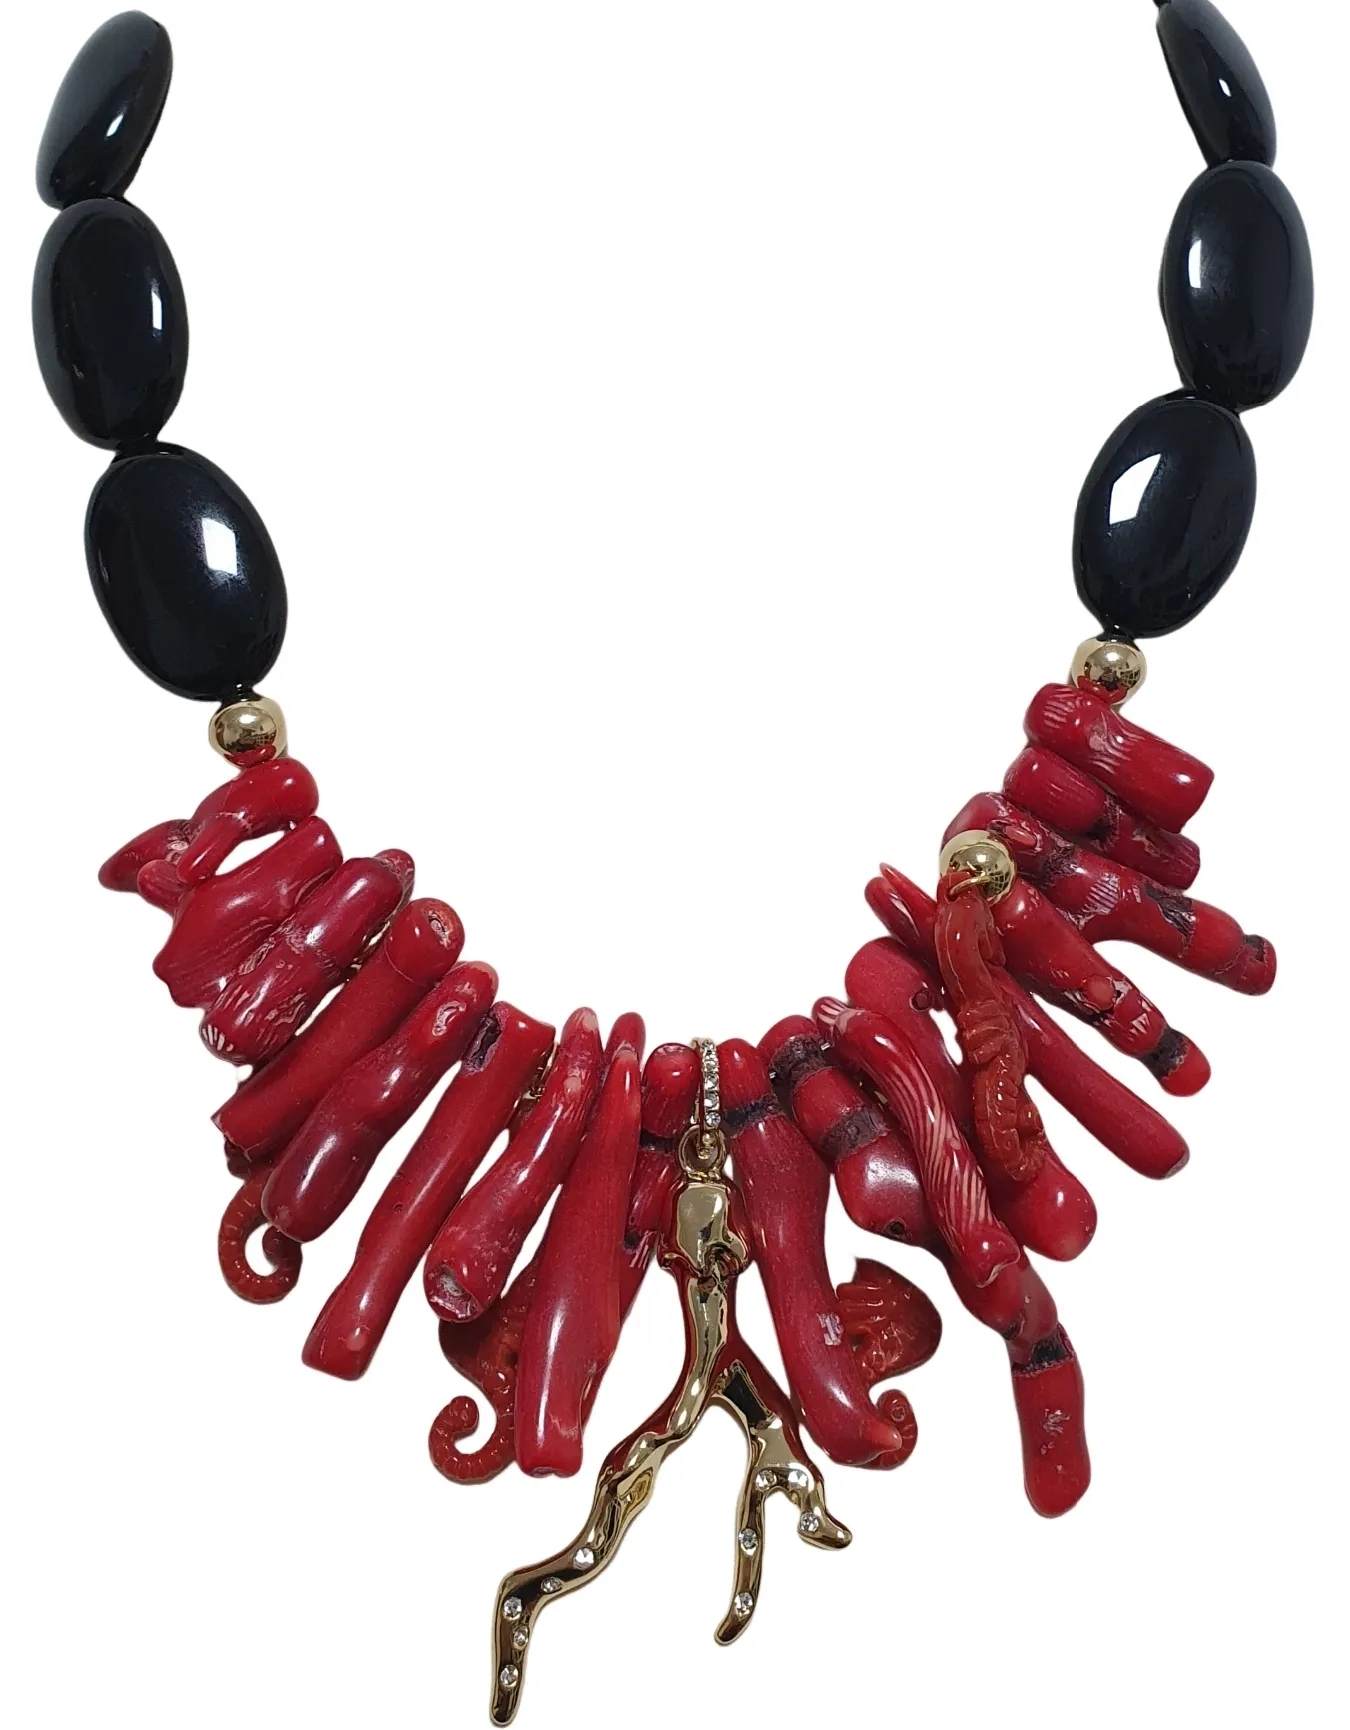 Collane di moda italiana realizzate in italia fatte a mano presente collier collezione estiva premium di qualità colore rosso e nero migliore